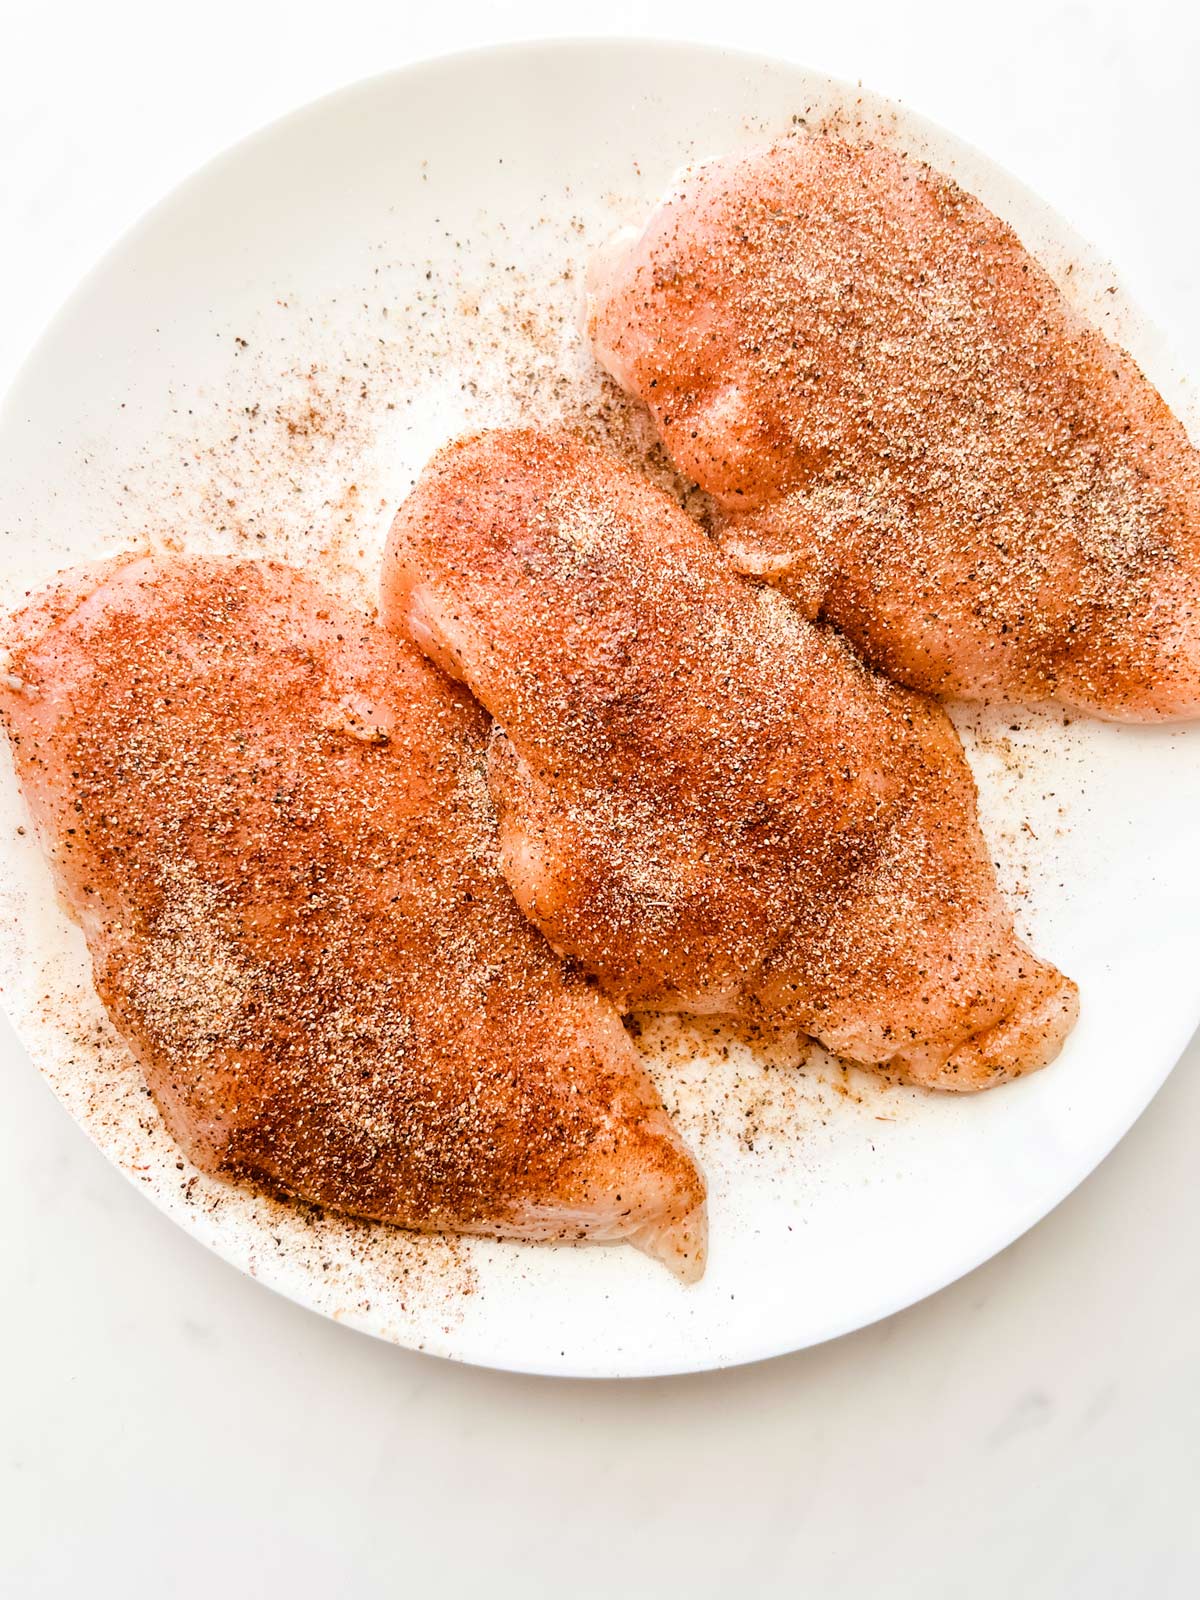 Seasoned chicken breast on a plate.